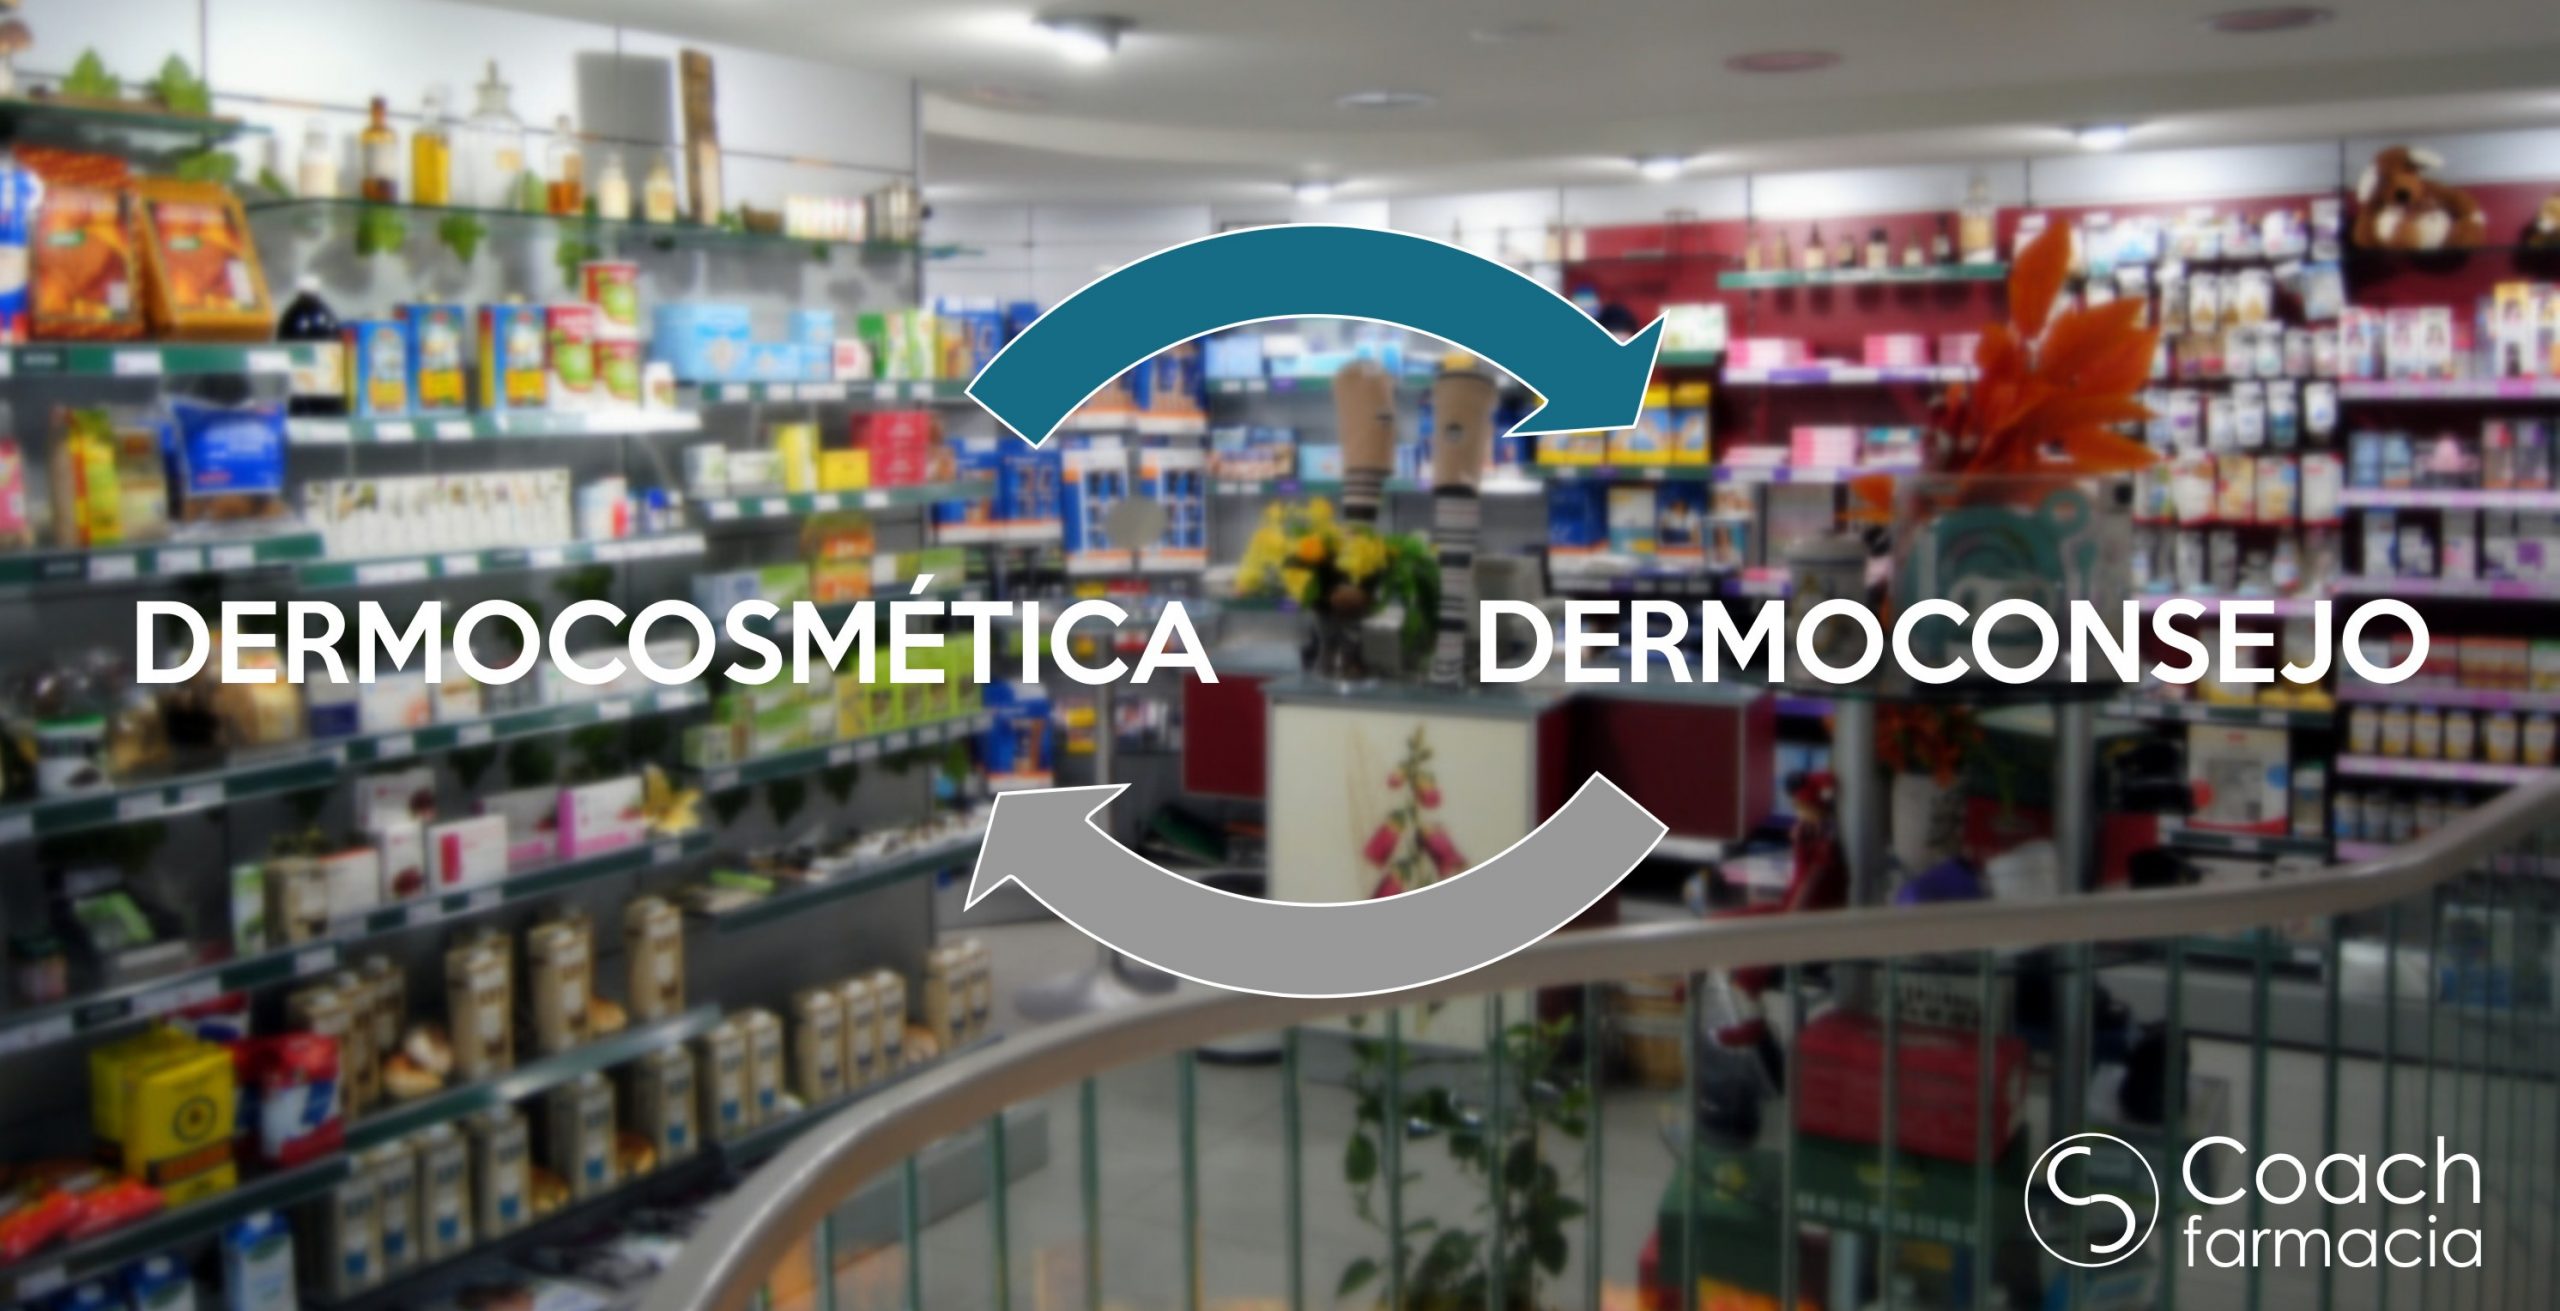 Dermocosmética y Dermo-consejo, mano a mano en la farmacia